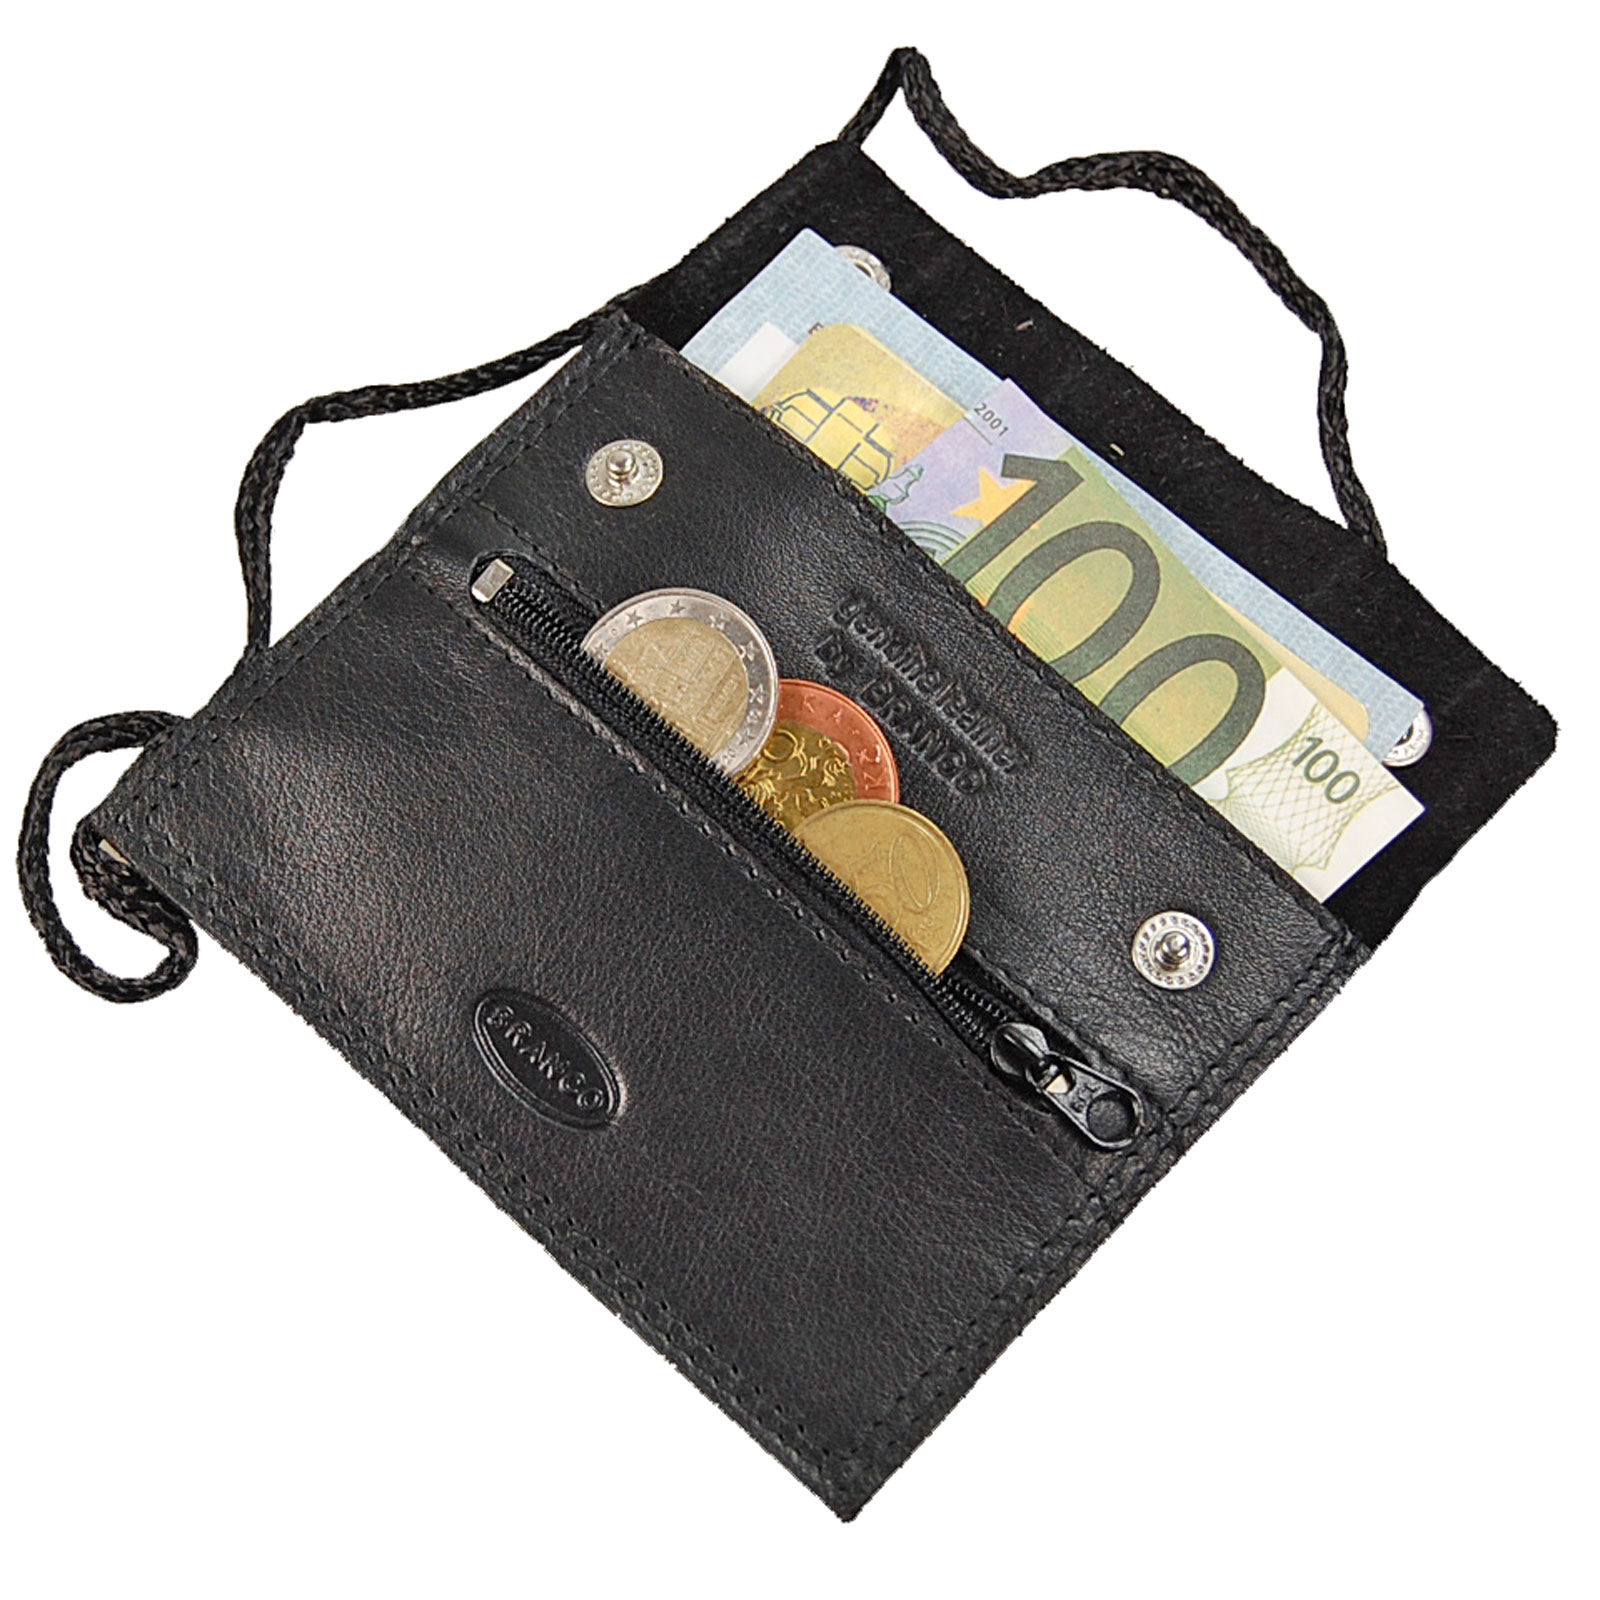 BOCCX kleiner Brustbeutel Leder Brusttasche Klarsichtfach Security Wallet 10018 